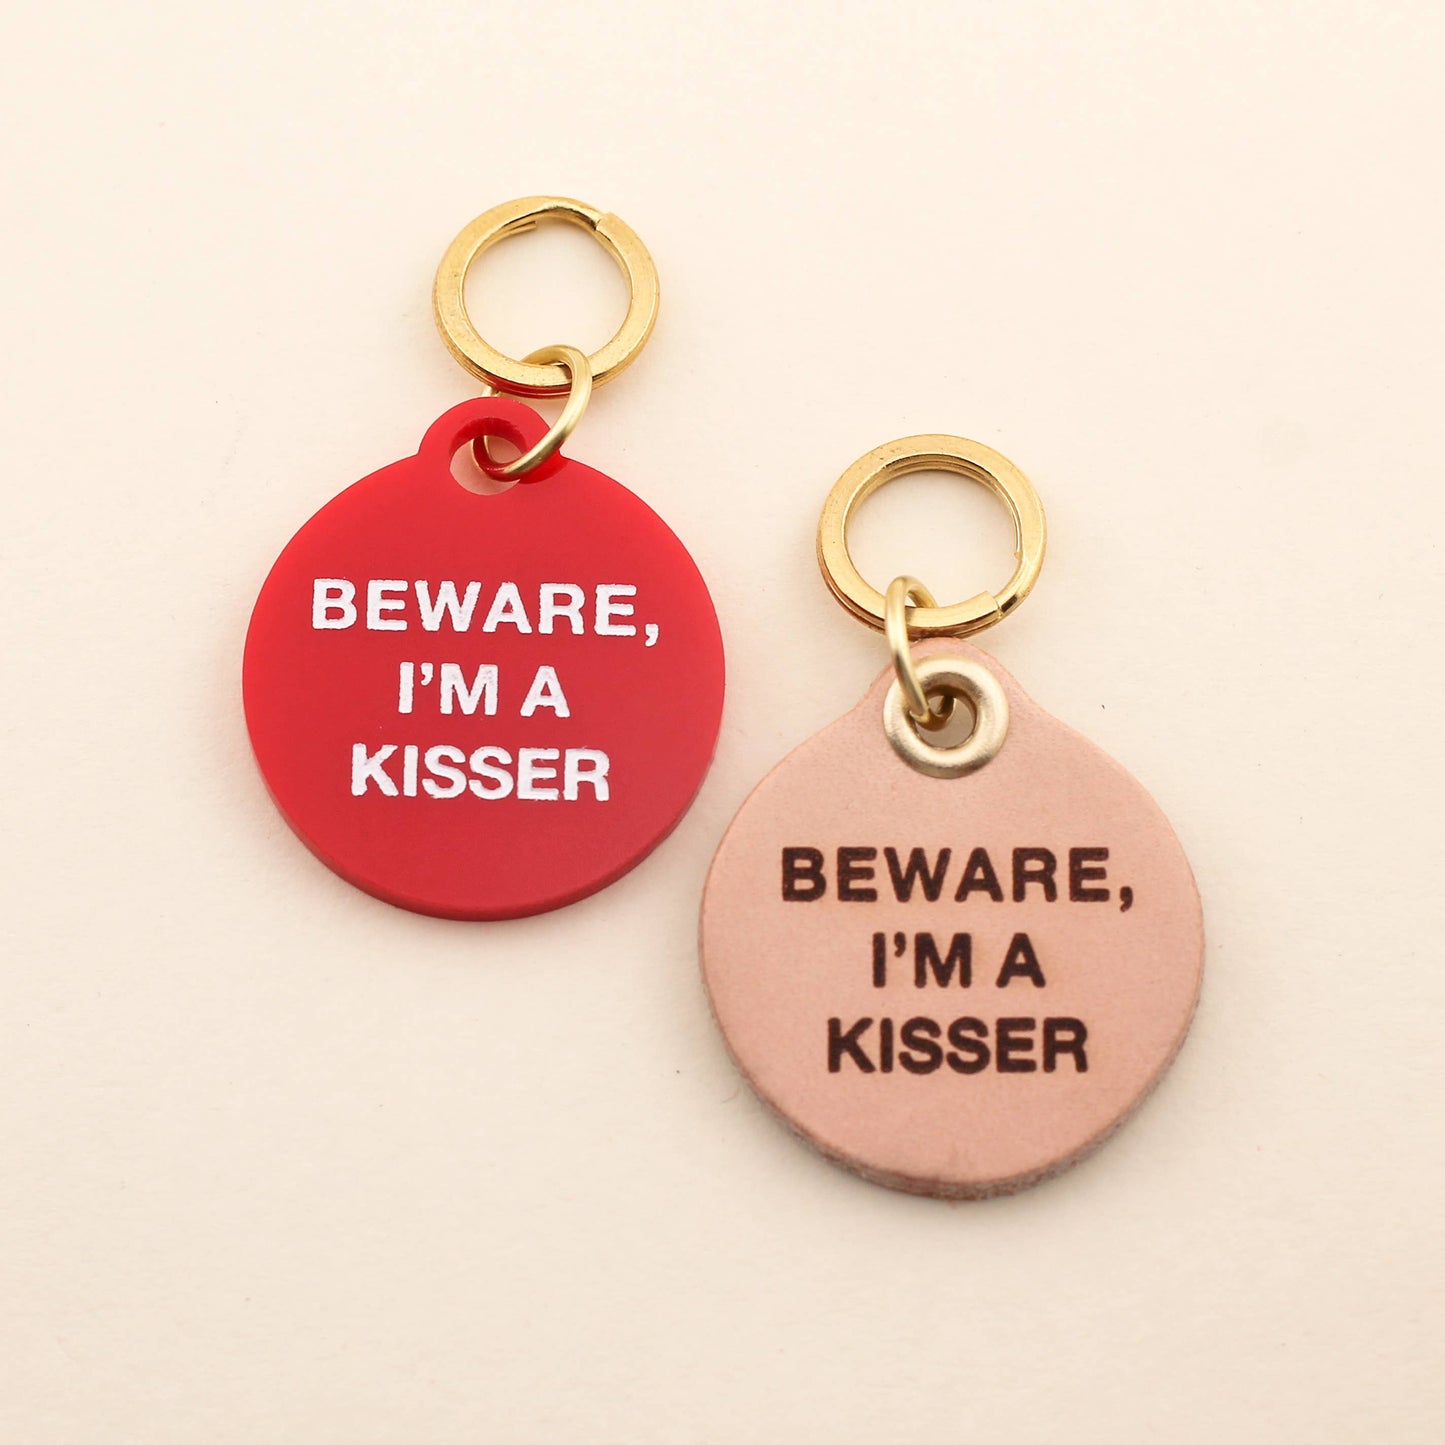 Beware, I'm A Kisser Pet Tag: Red Acrylic